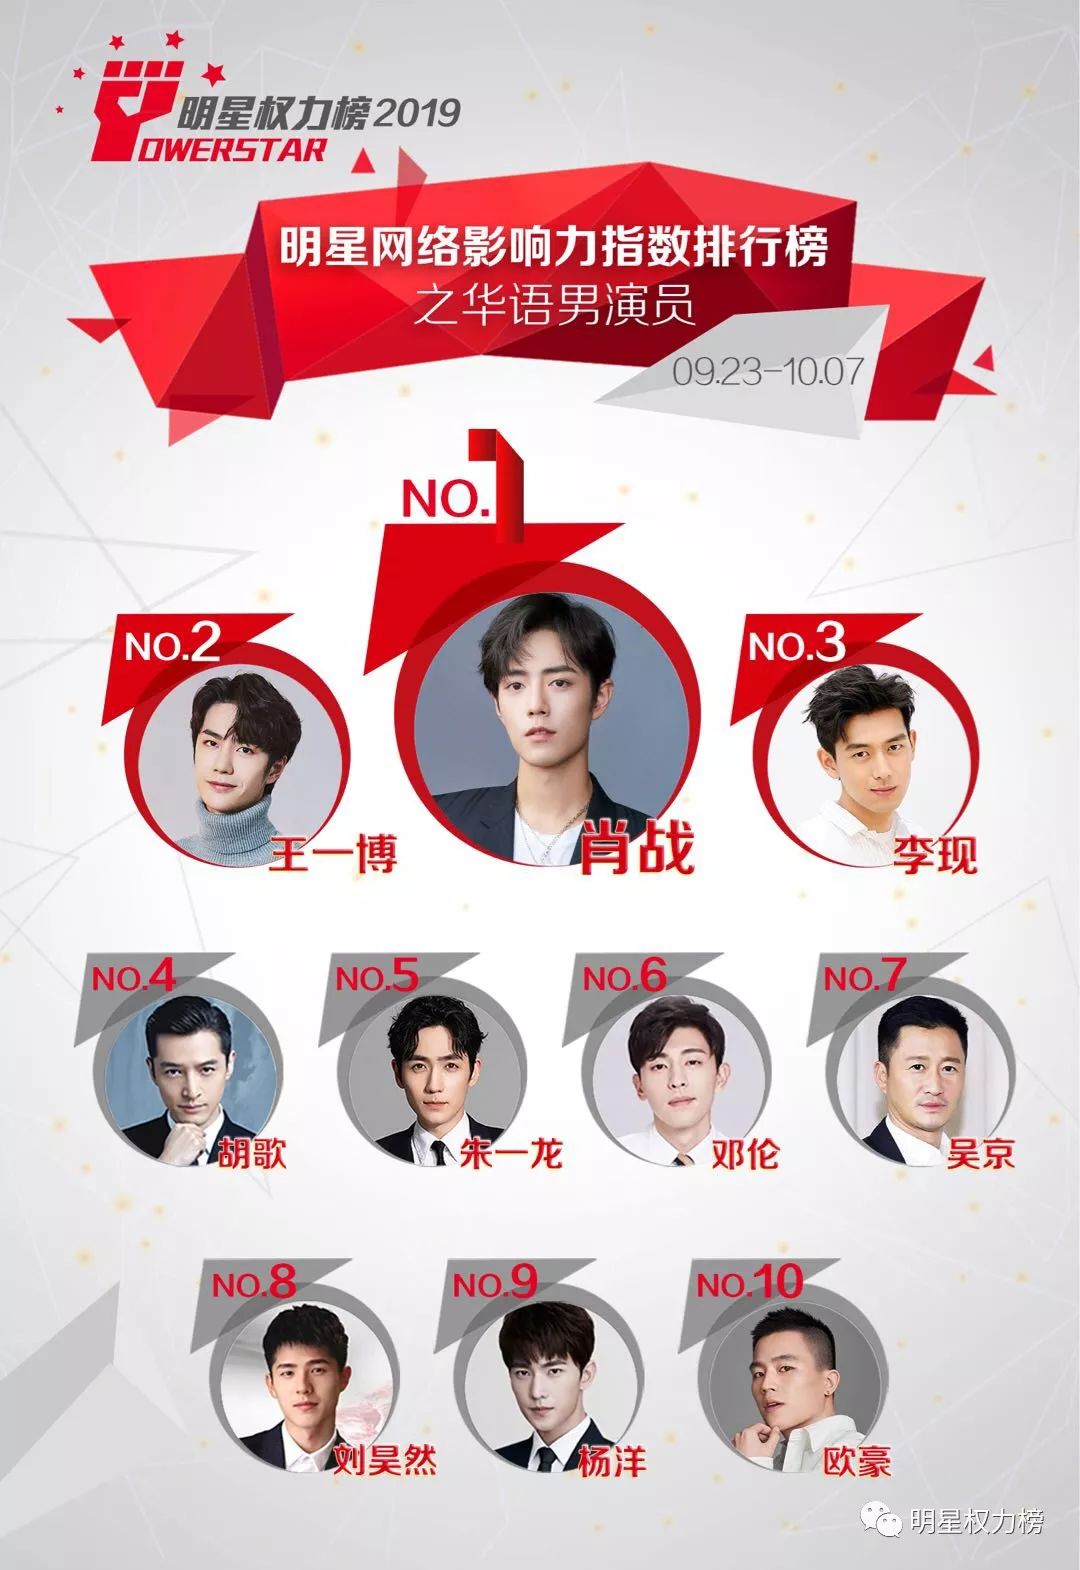 明星网络影响力指数排行榜第219期榜单之华语男演员Top10